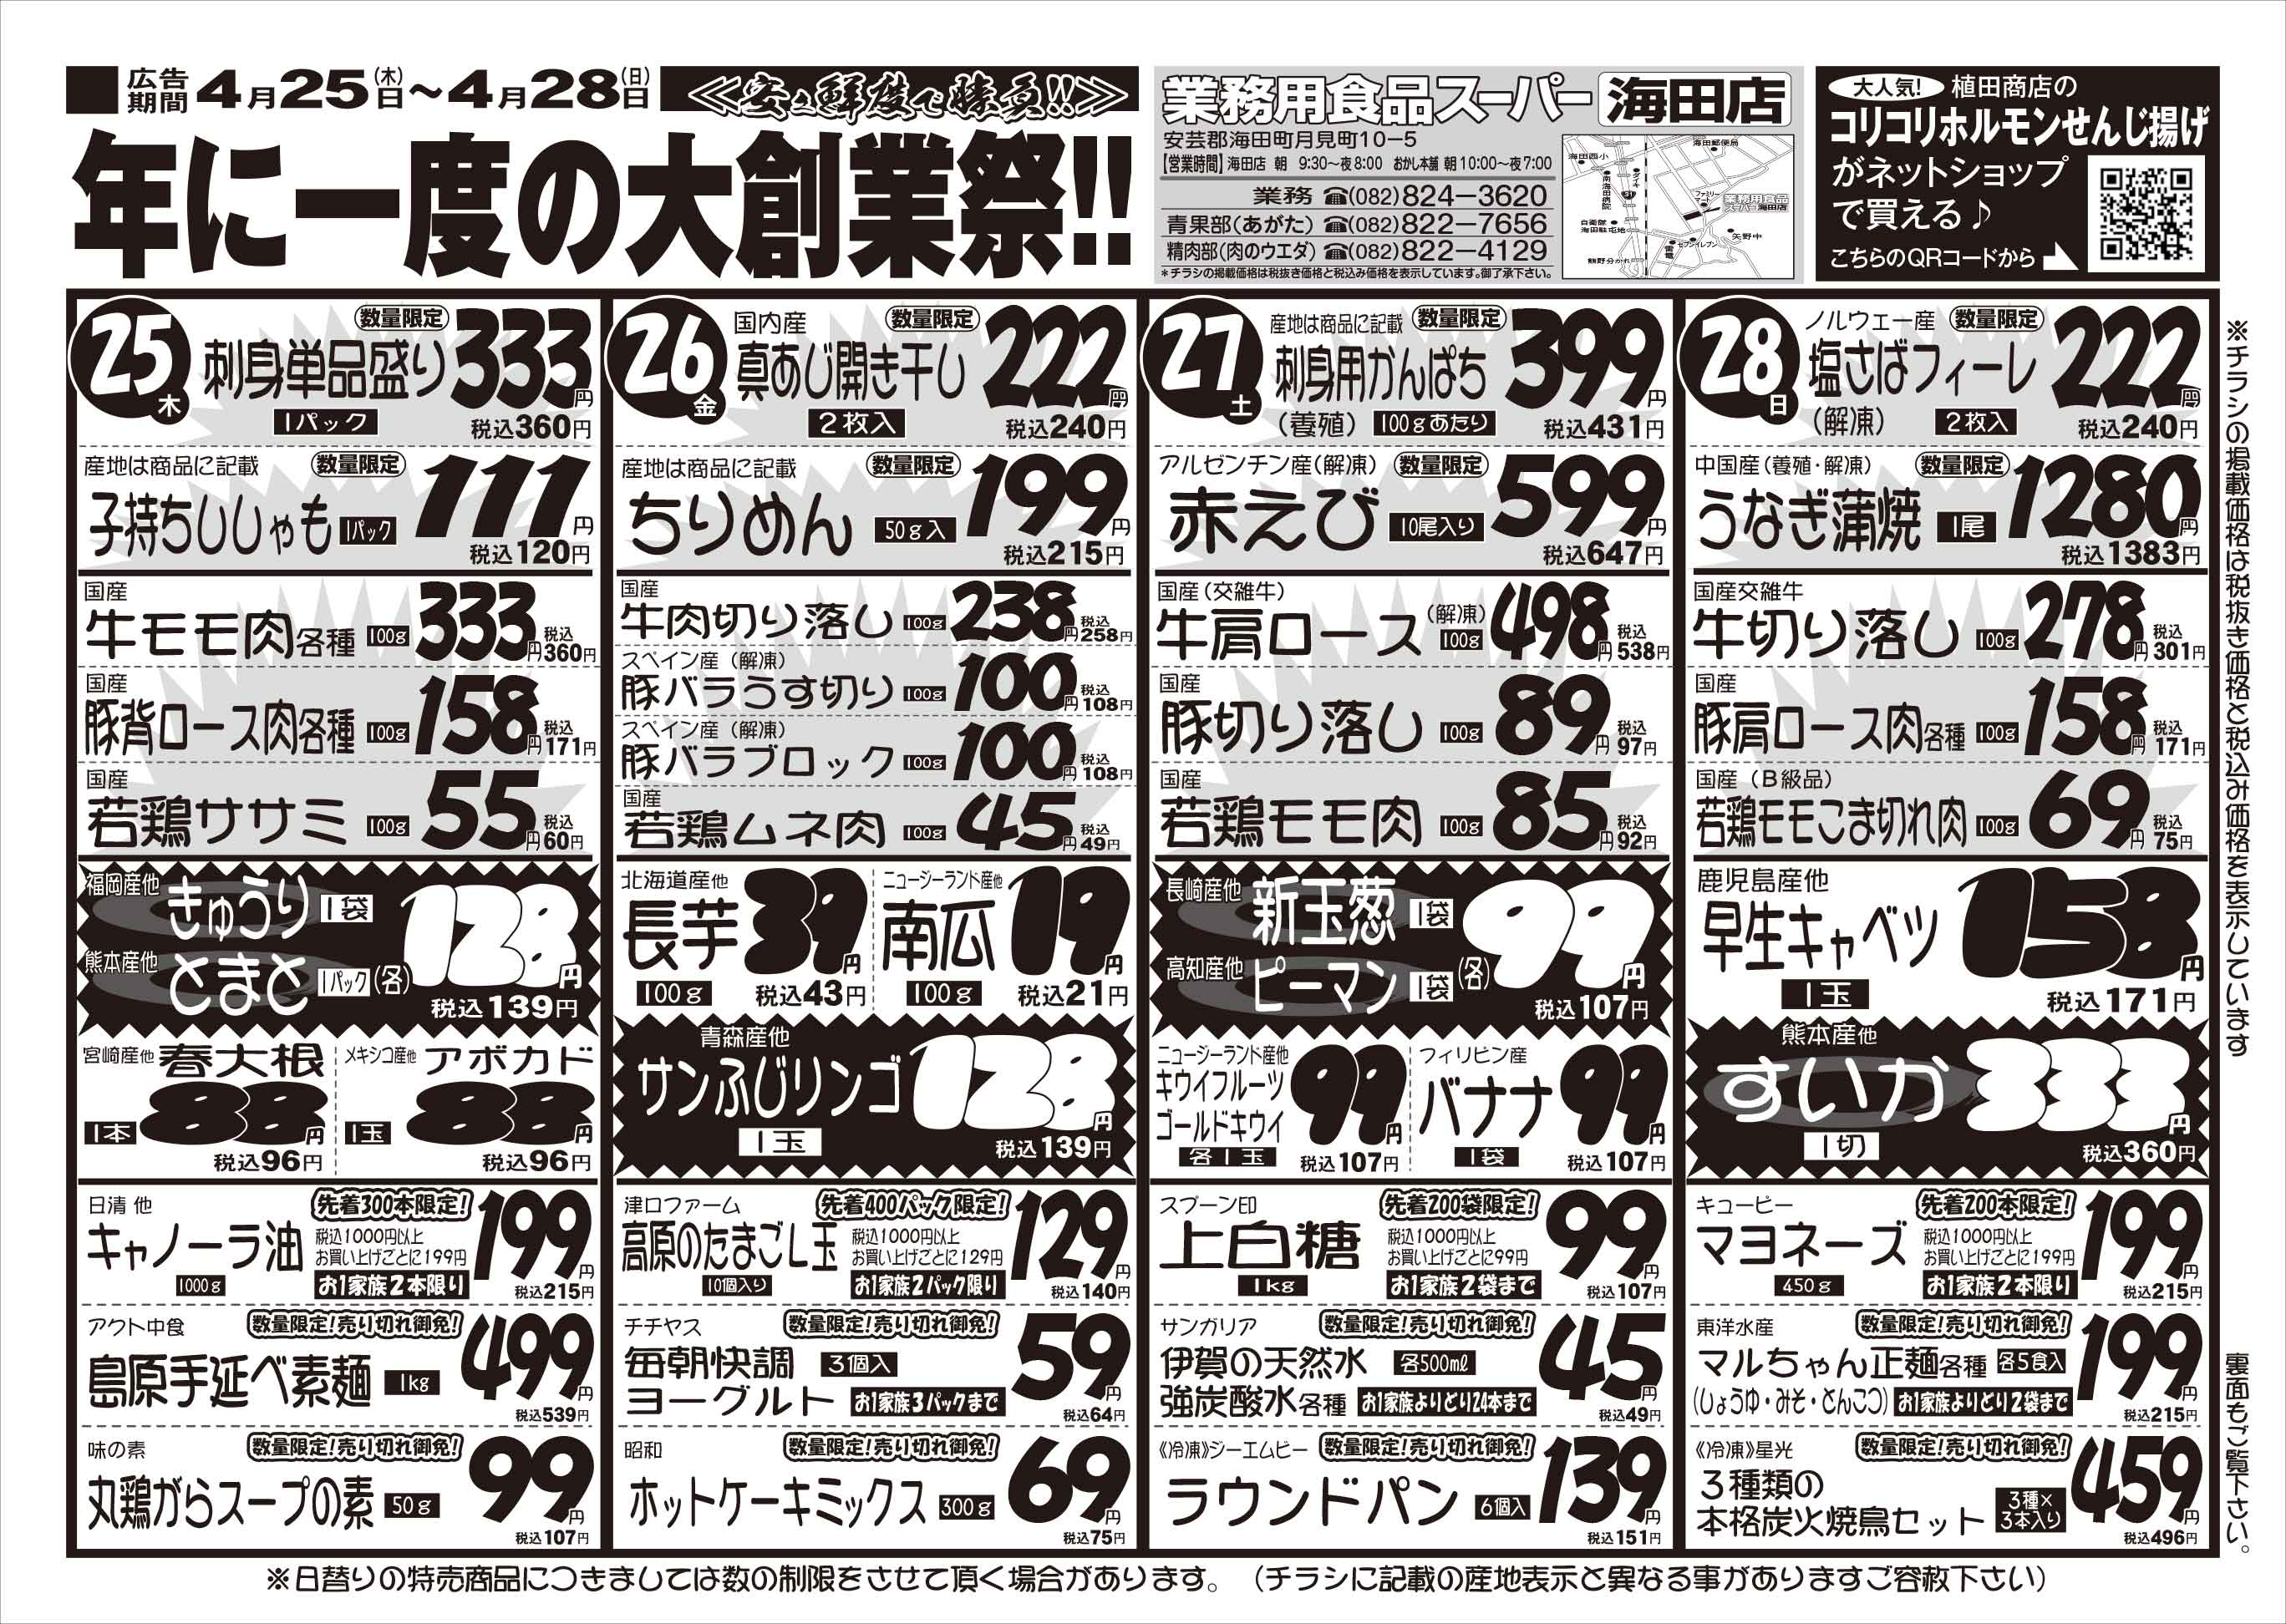 業務用食品スーパー海田店 4/25-28 大創業祭セールチラシオモテ